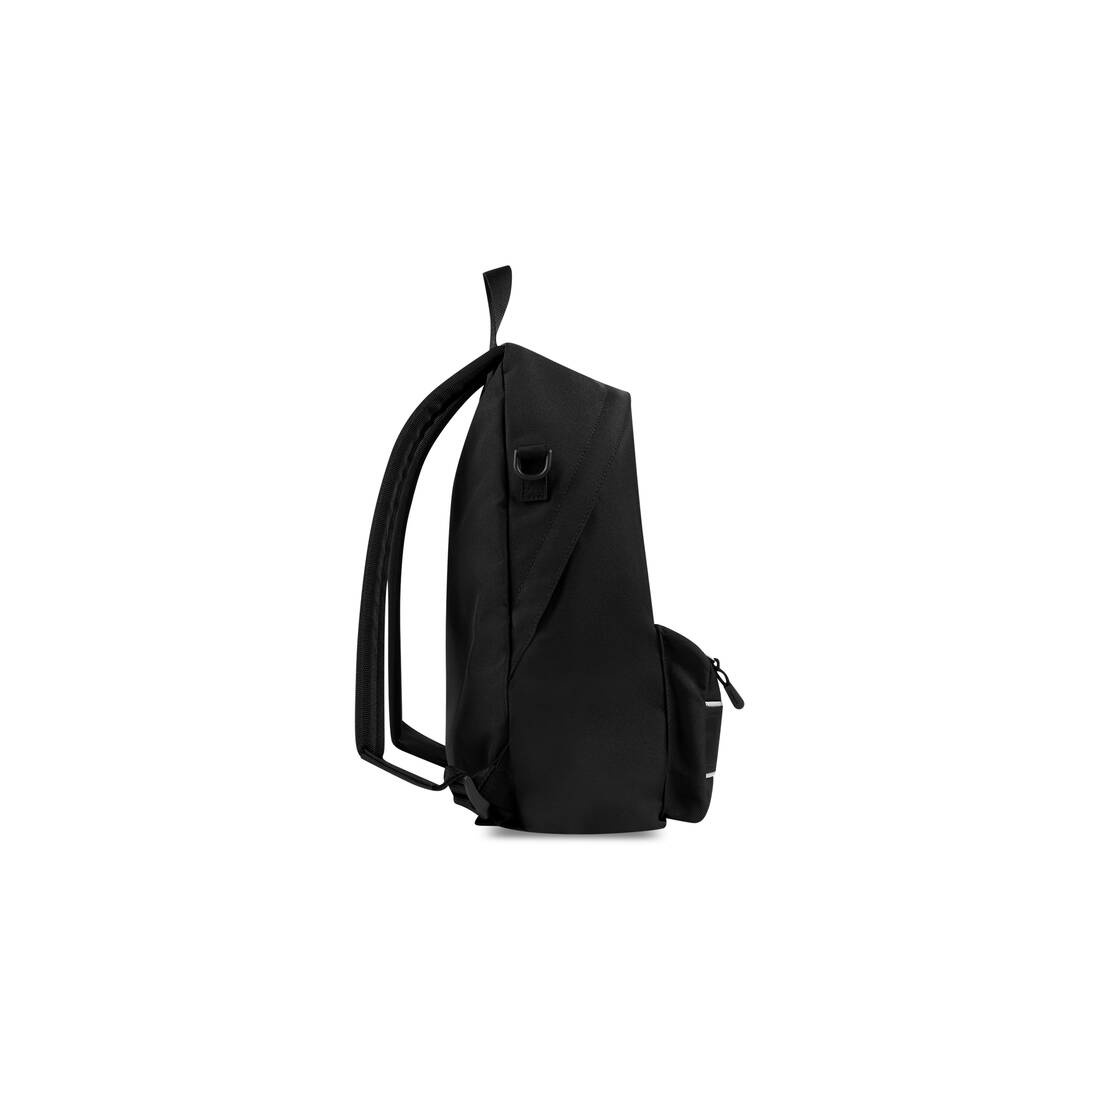 Men's Sport Crossbody Backpack in Black/white - 2